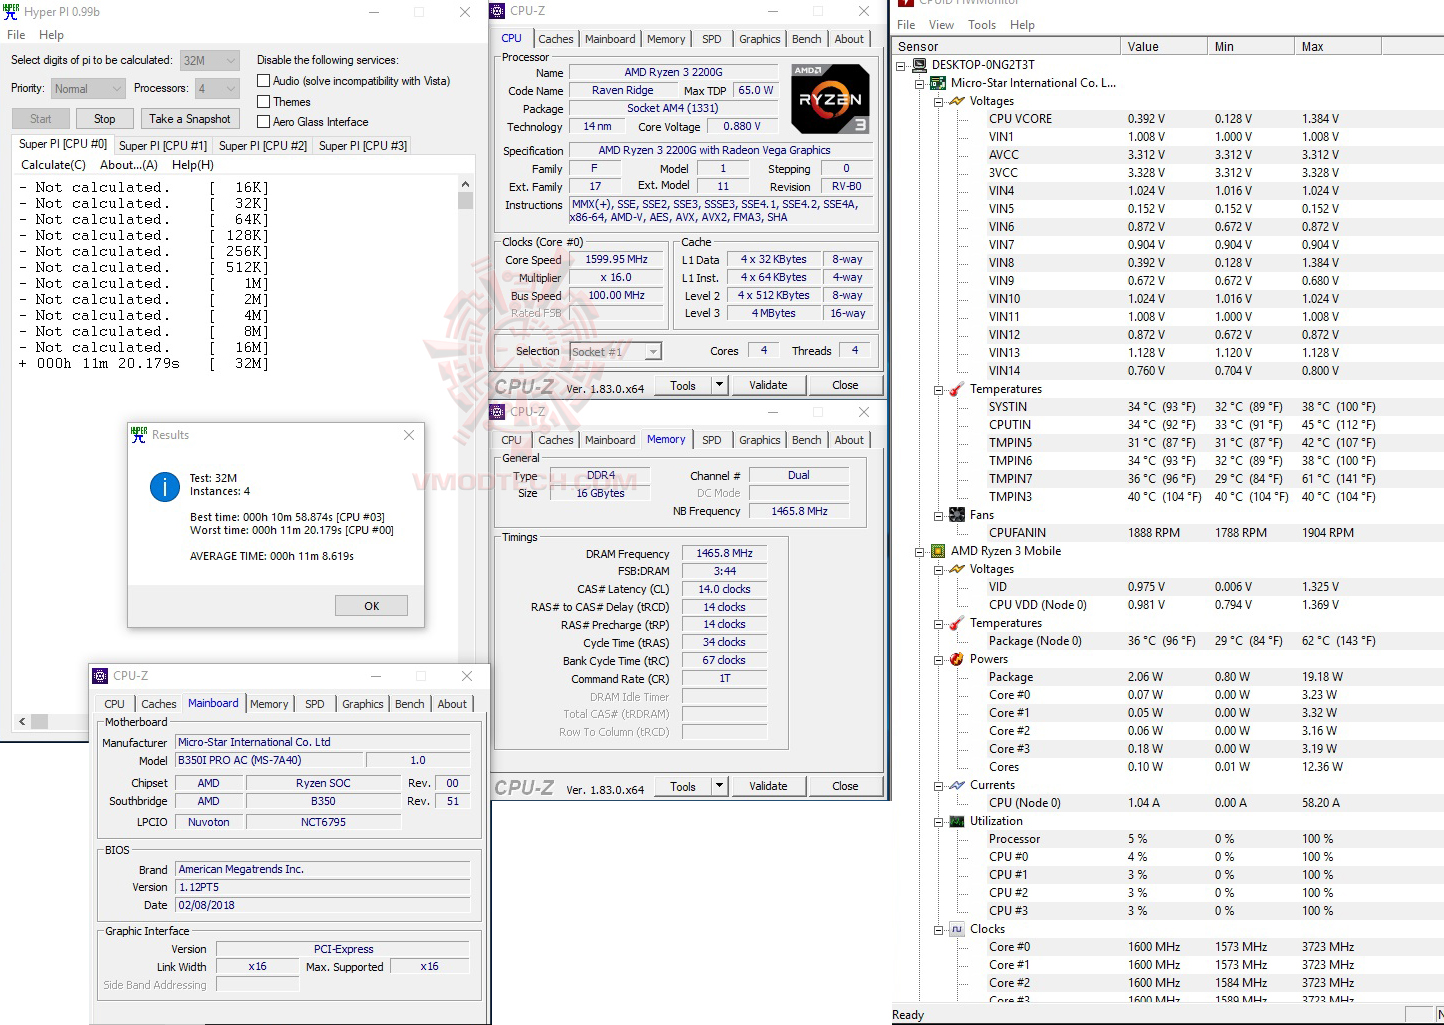 h32 2 AMD RYZEN 3 2200G RAVEN RIDGE PROCESSOR REVIEW